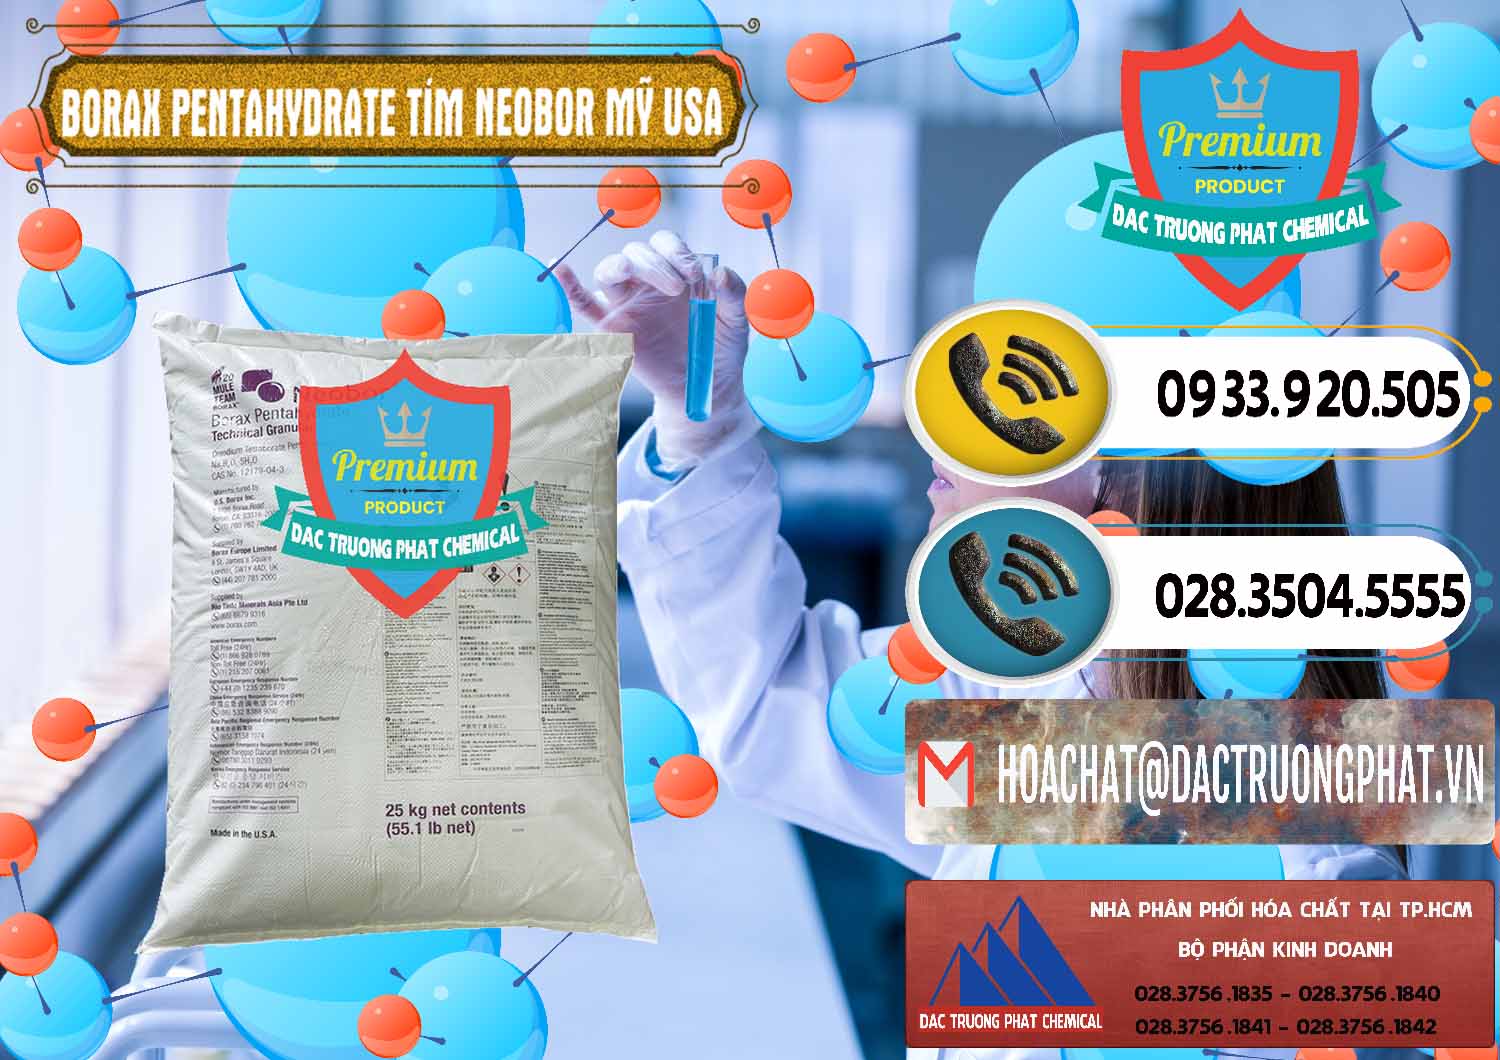 Nơi phân phối _ bán Borax Pentahydrate Bao Tím Neobor TG Mỹ Usa - 0277 - Công ty cung ứng & phân phối hóa chất tại TP.HCM - hoachatdetnhuom.vn